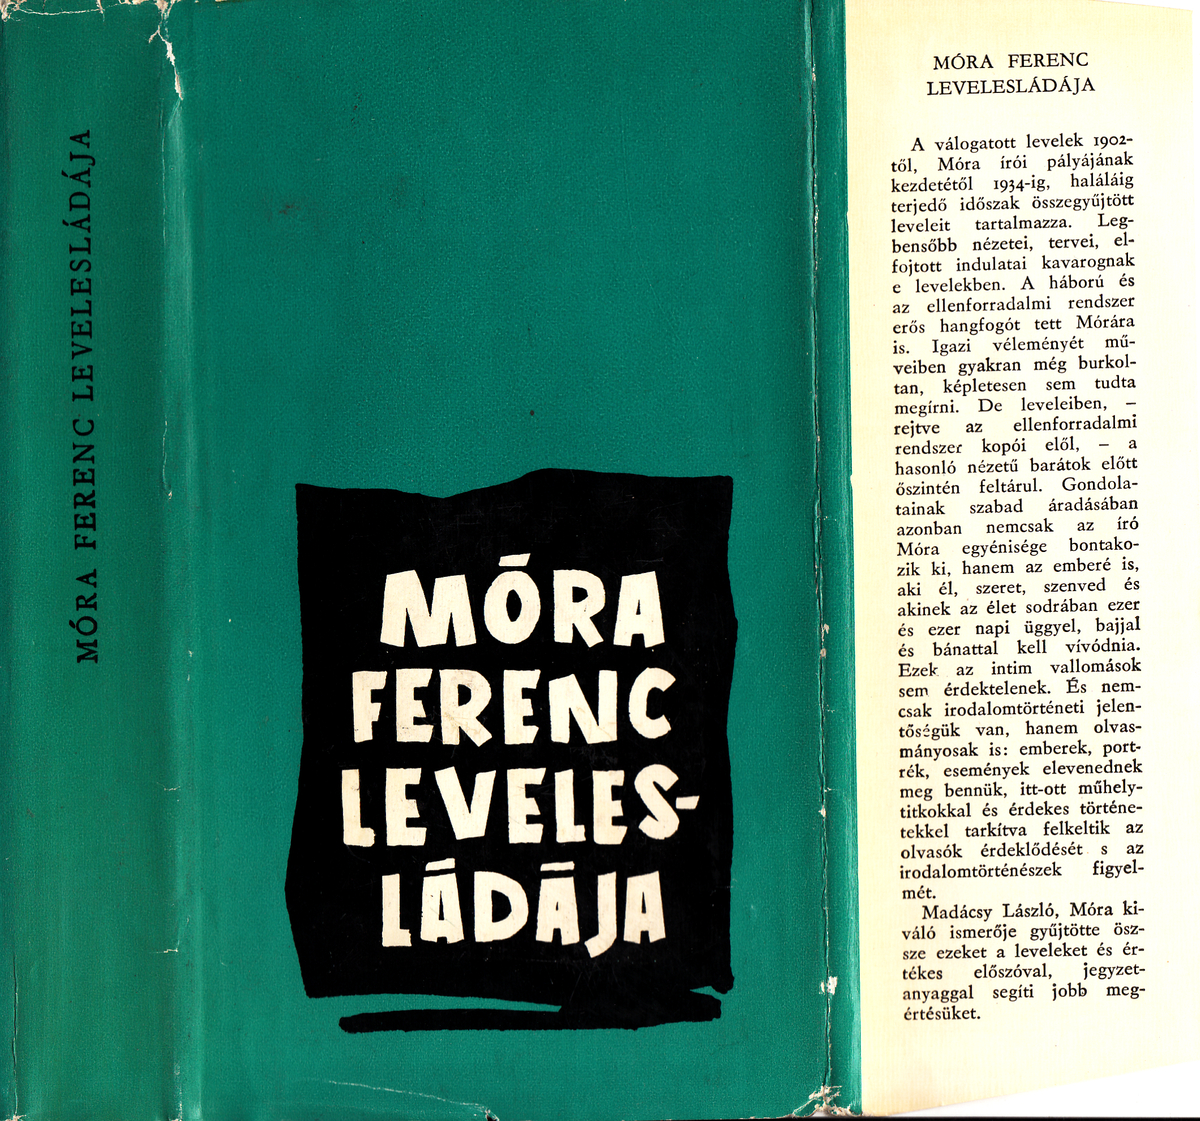 Móra Ferenc: Móra Ferenc levelesládája | Library OPAC